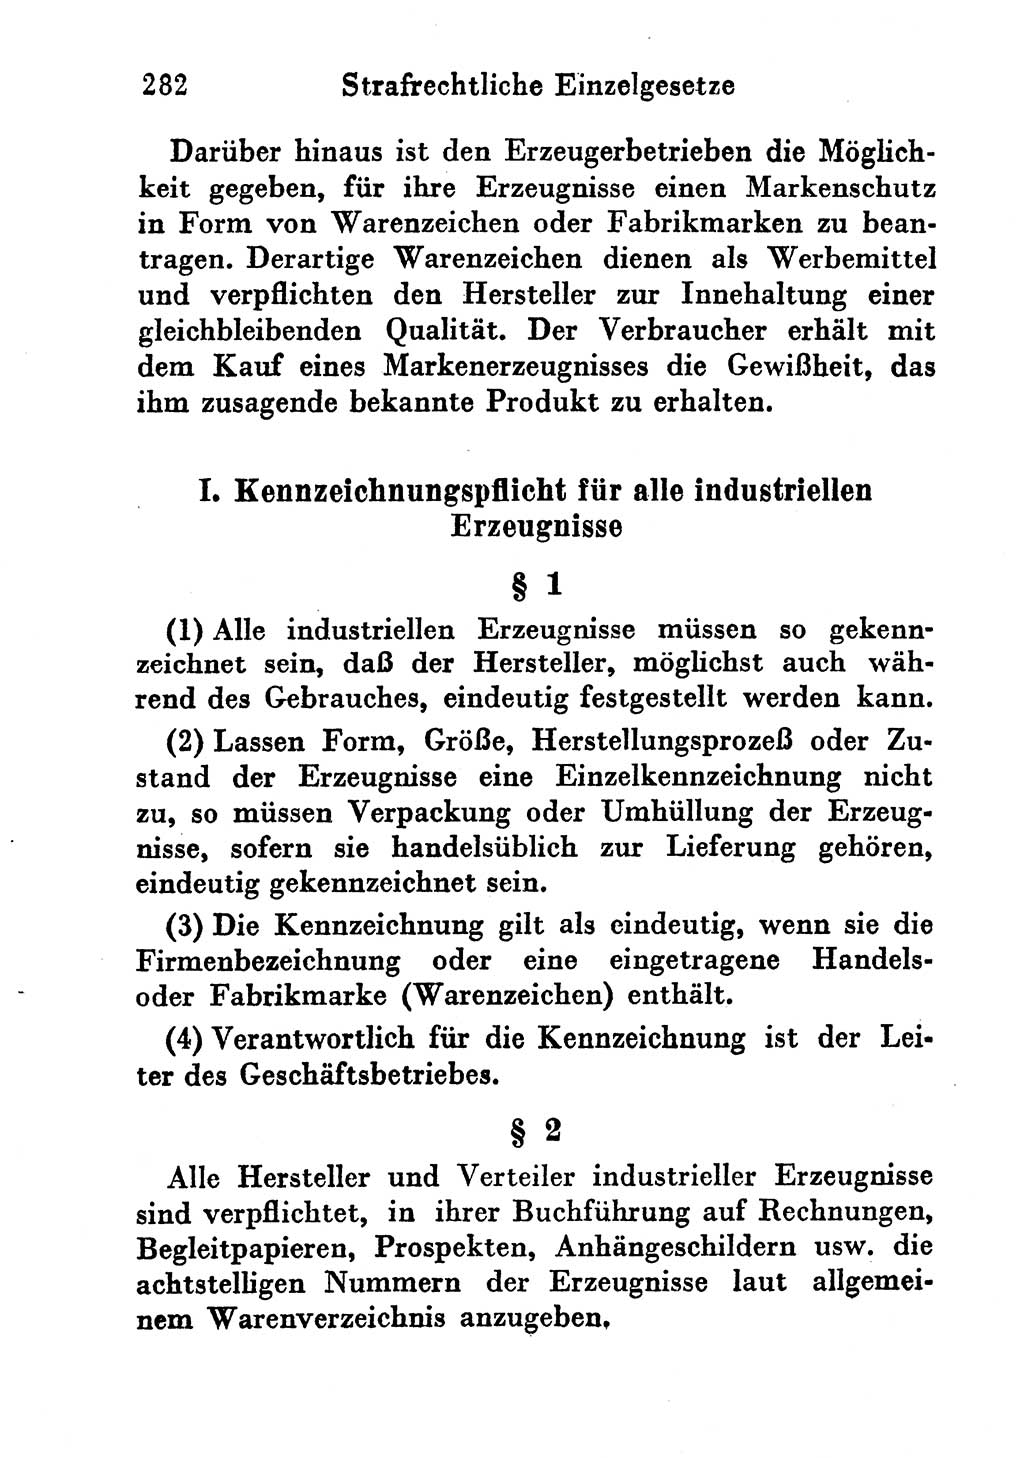 Strafgesetzbuch (StGB) und andere Strafgesetze [Deutsche Demokratische Republik (DDR)] 1956, Seite 282 (StGB Strafges. DDR 1956, S. 282)